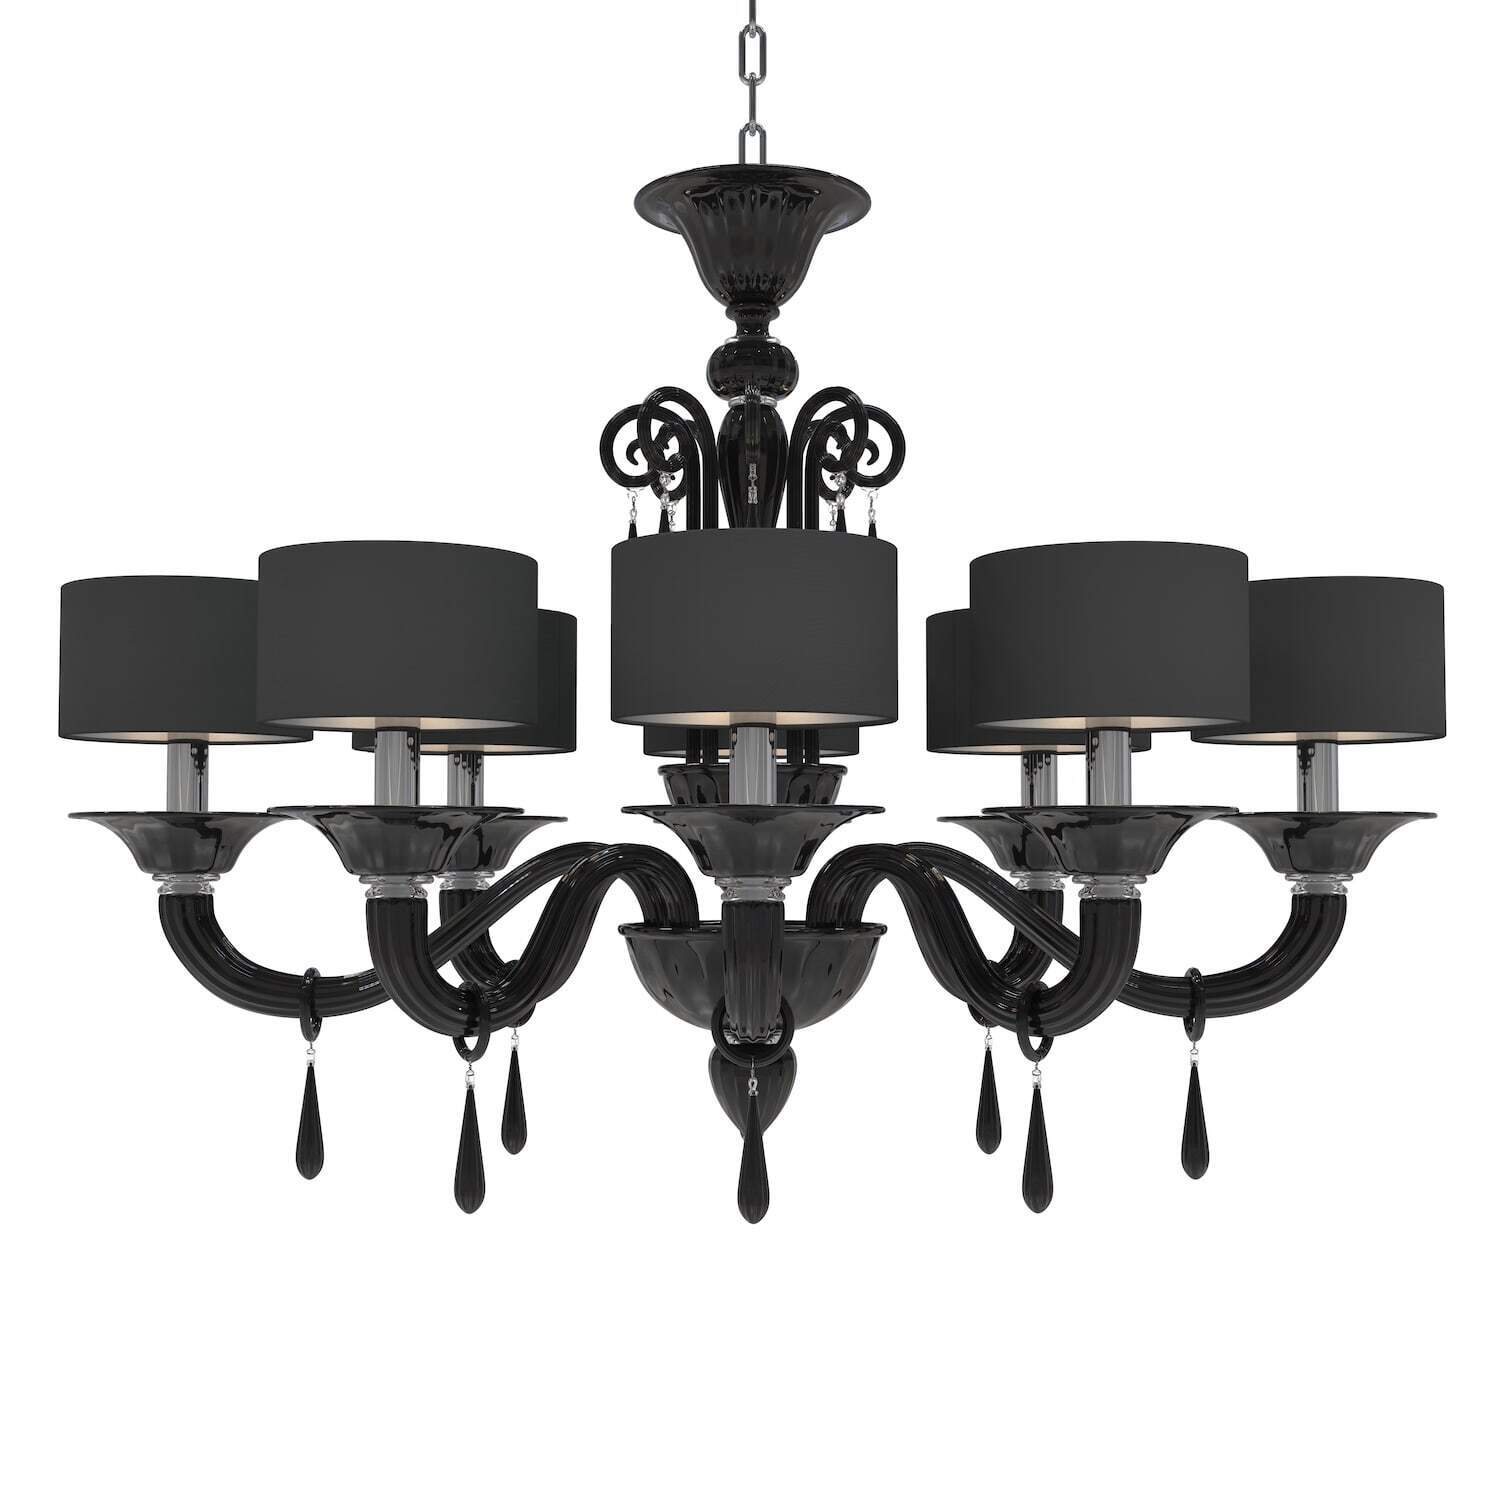 Luxury black Italian chandelier